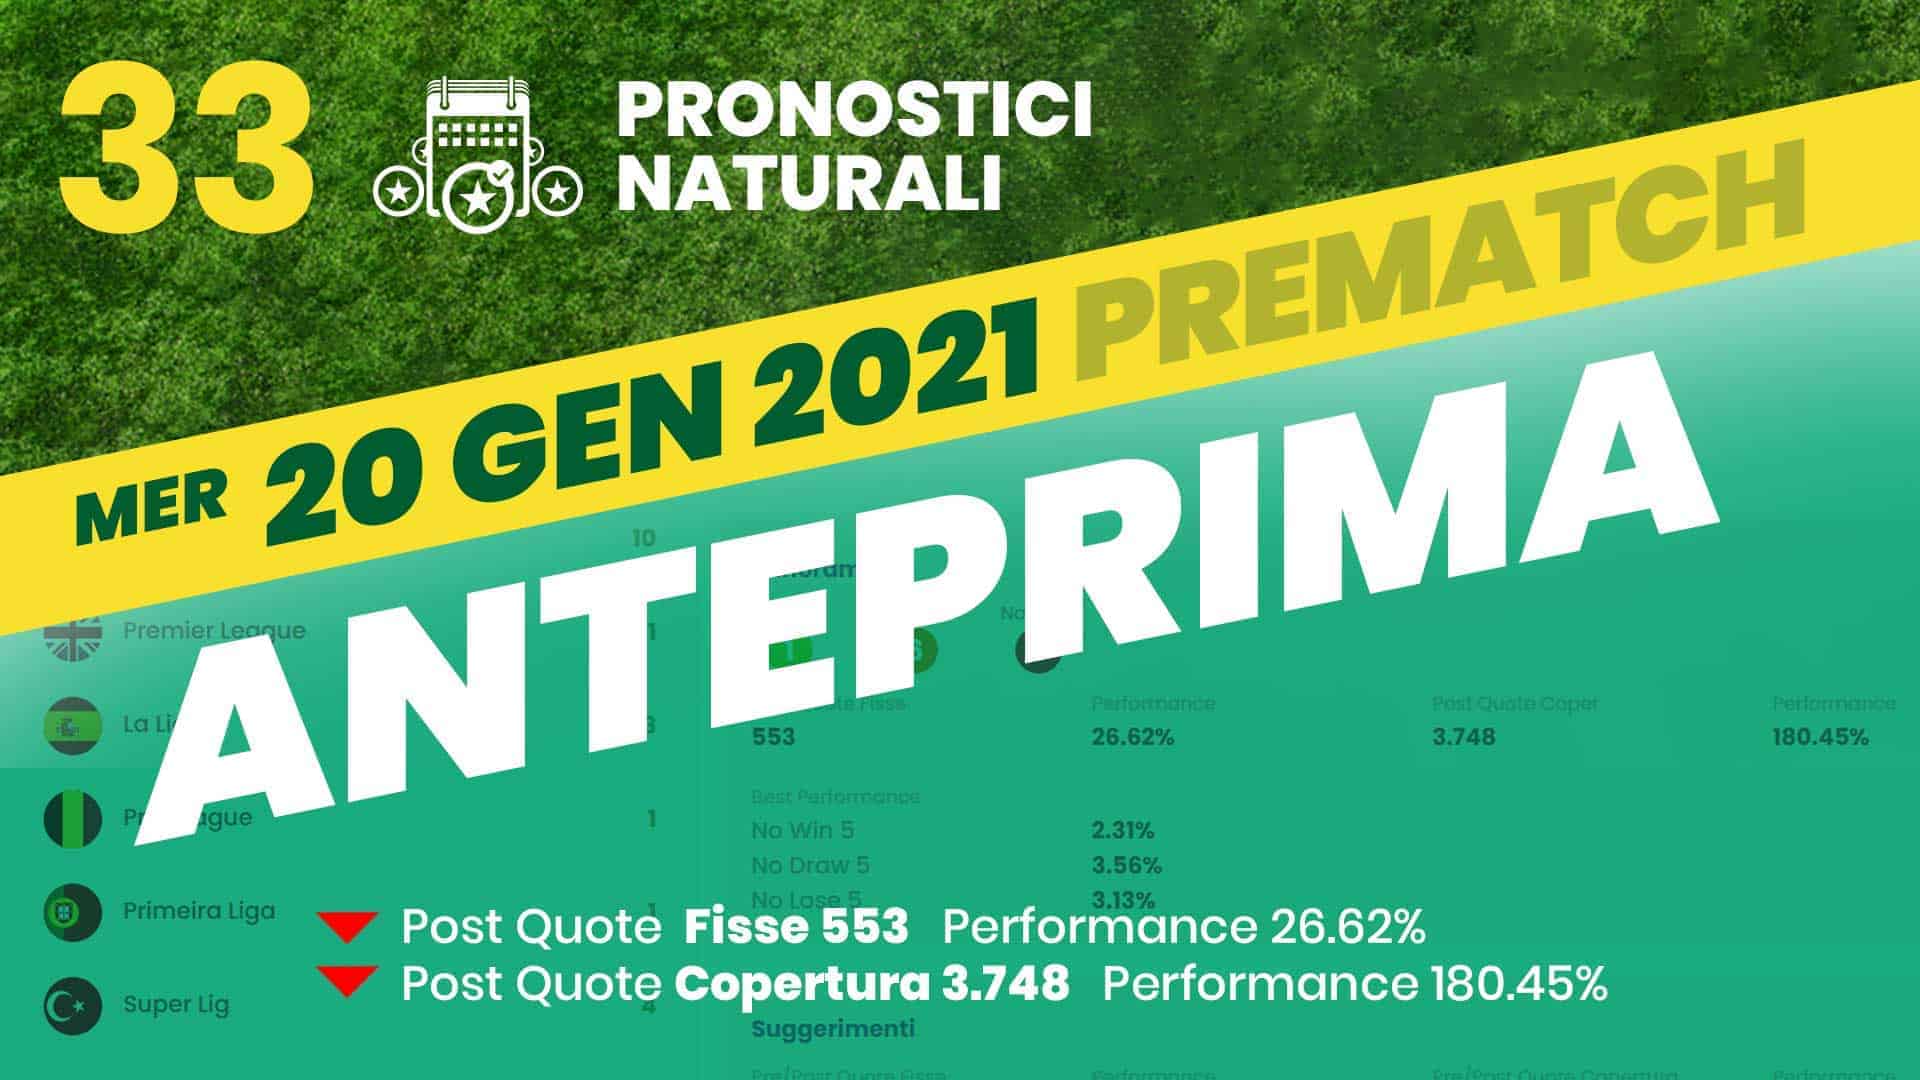 Pronostici Naturali Anteprima Scommesse Betting Calcio Anteprima Partite Mercoledi 20 Gennaio 2021